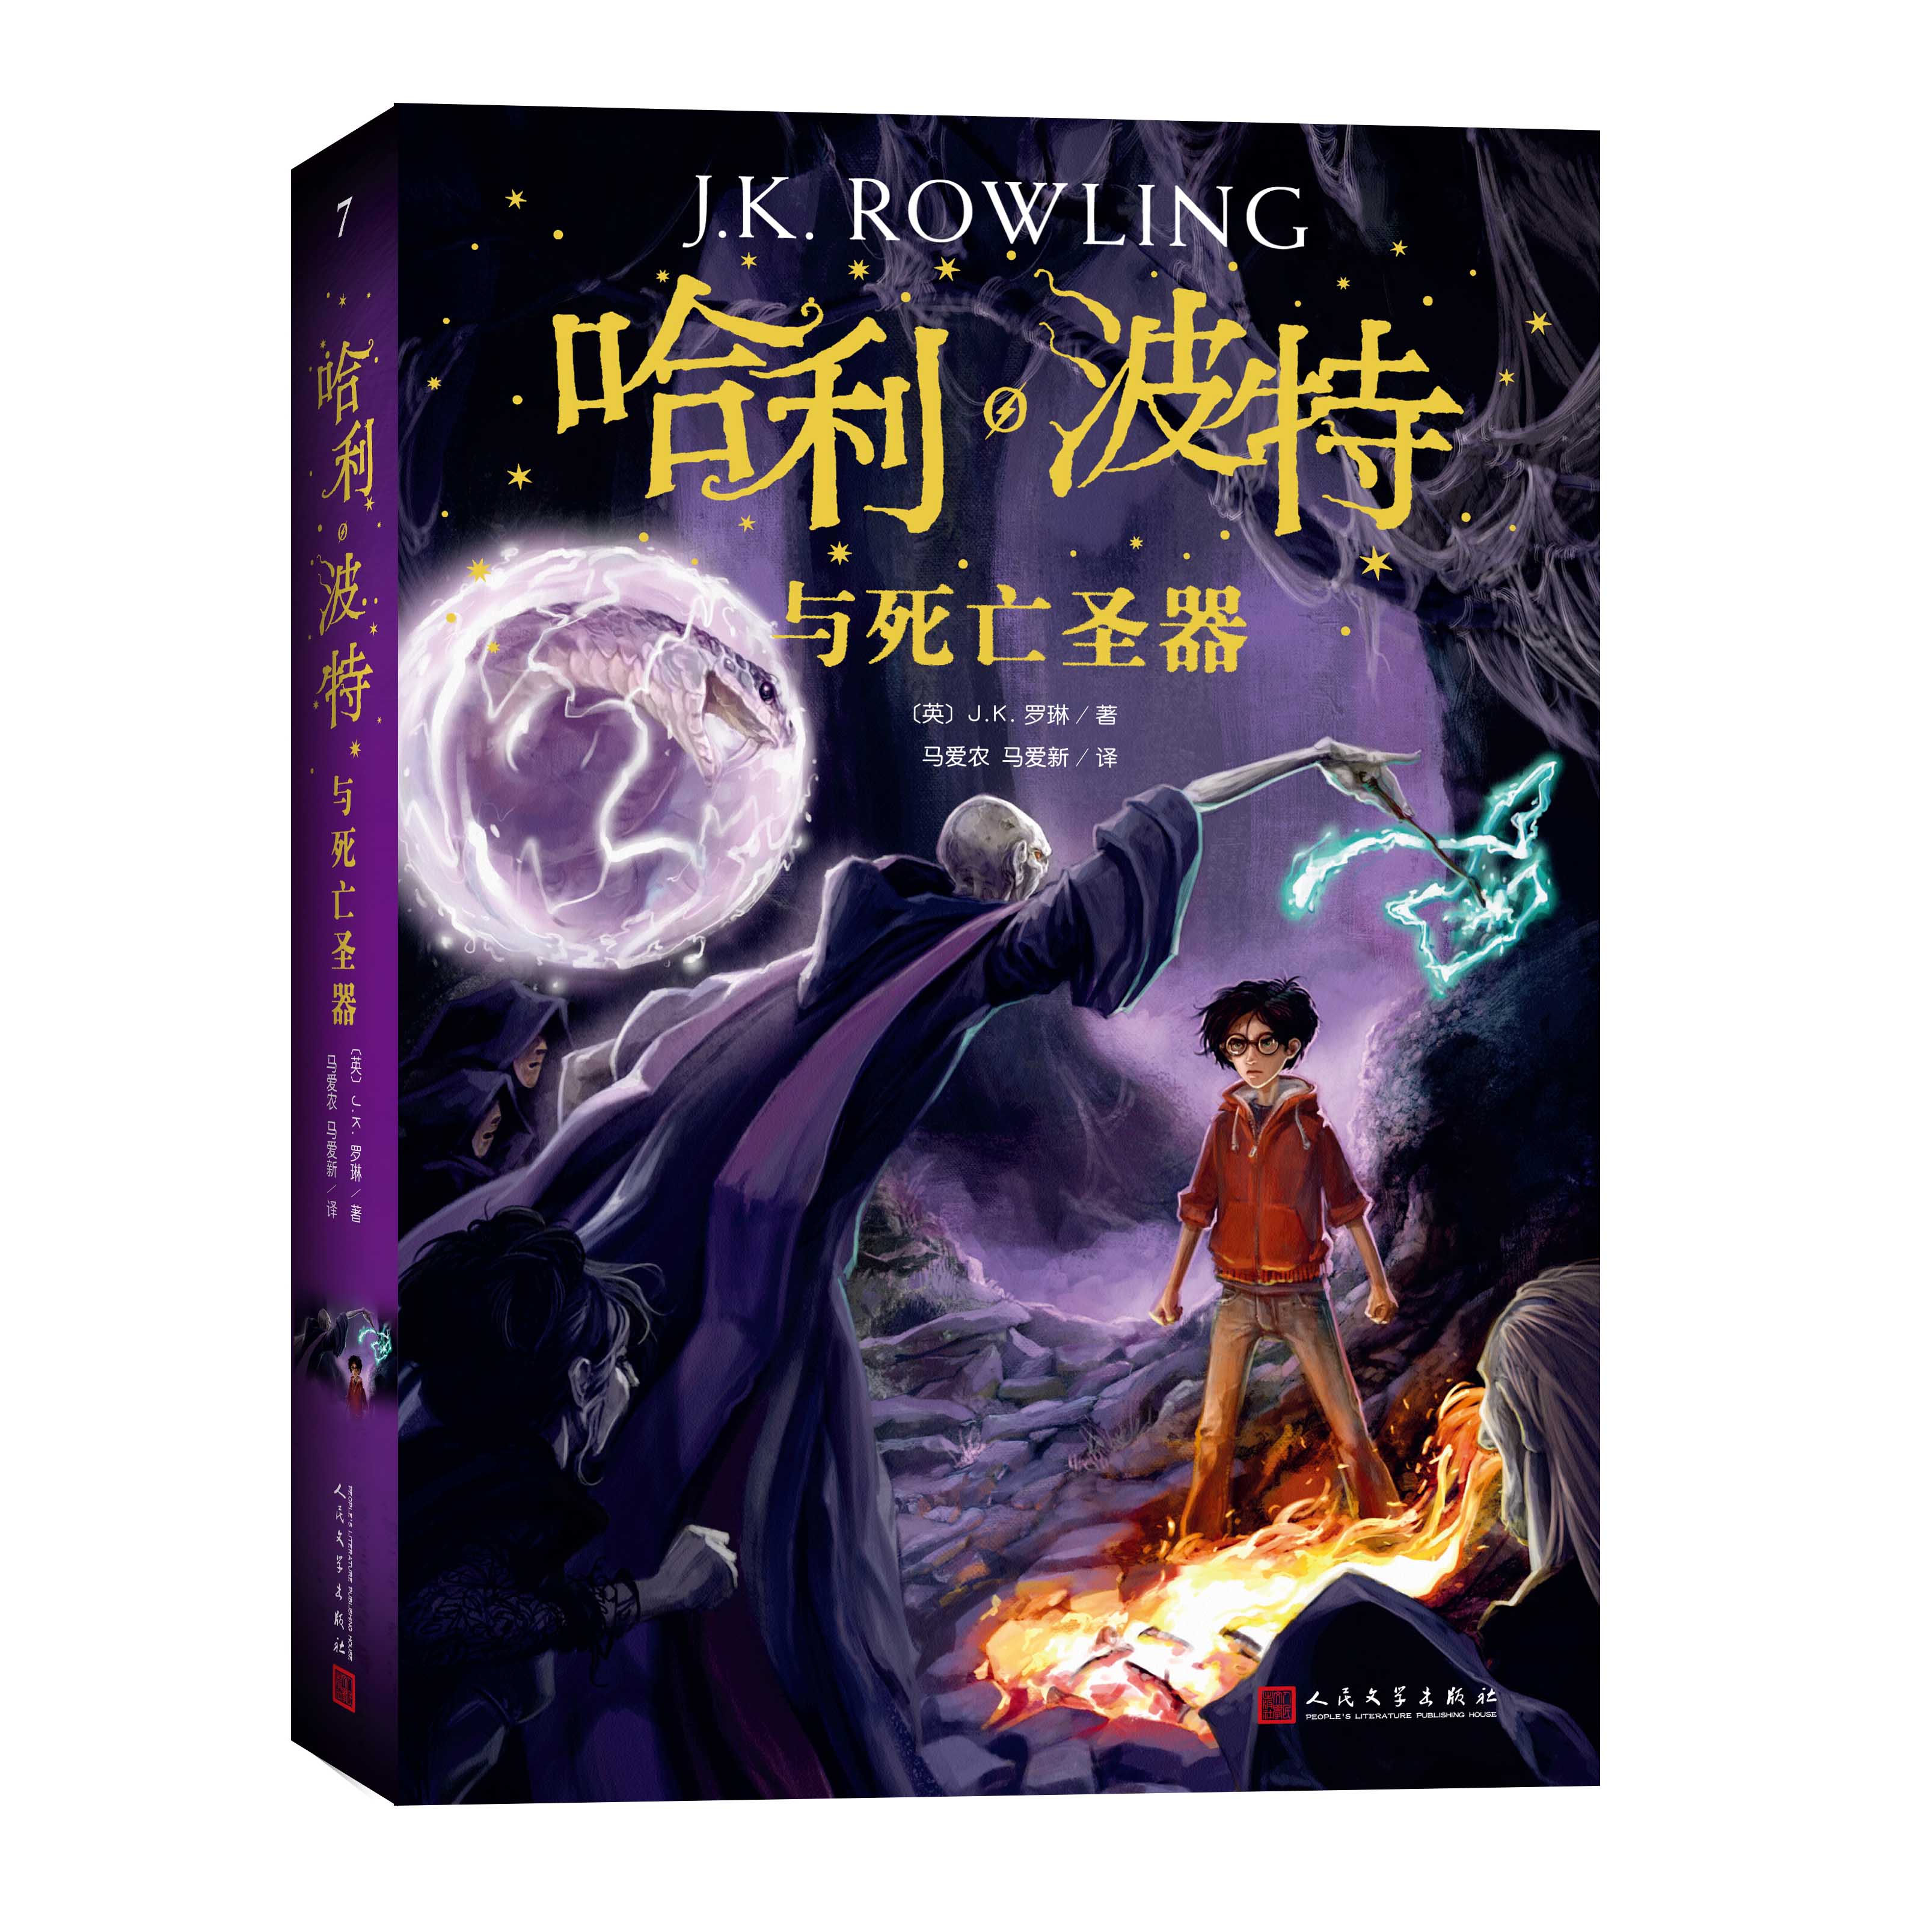 正版现货包邮 哈利波特与死亡圣器平JK罗琳著外国儿童文学经典奇幻小说魔法英国版封面畅销